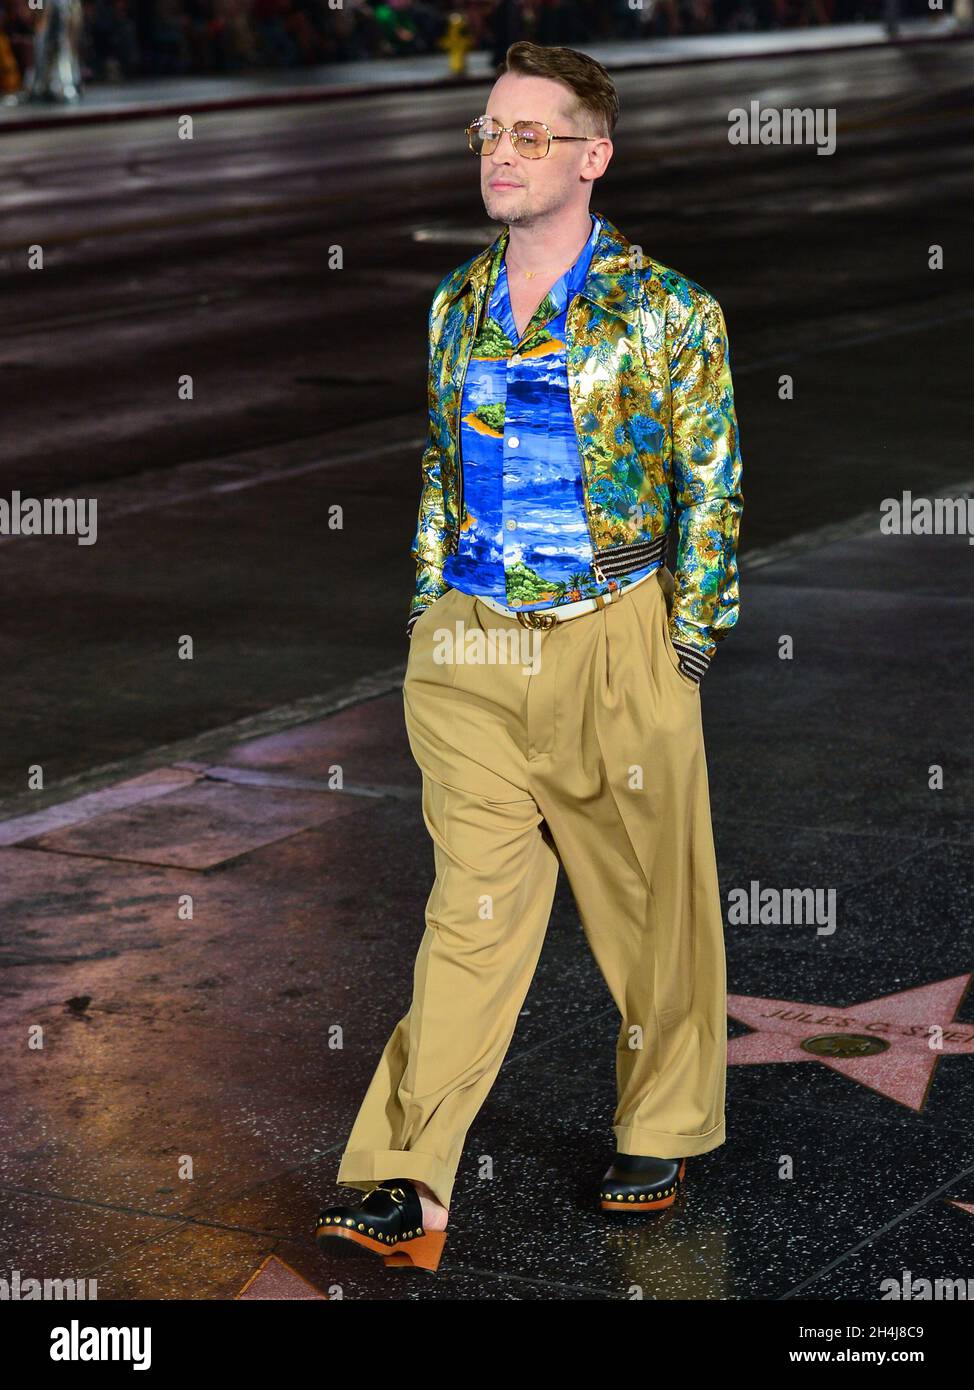 HOLLYWOOD, LOS ANGELES, CALIFORNIA, USA - NOVEMBER 02: Actor Macaulay ...